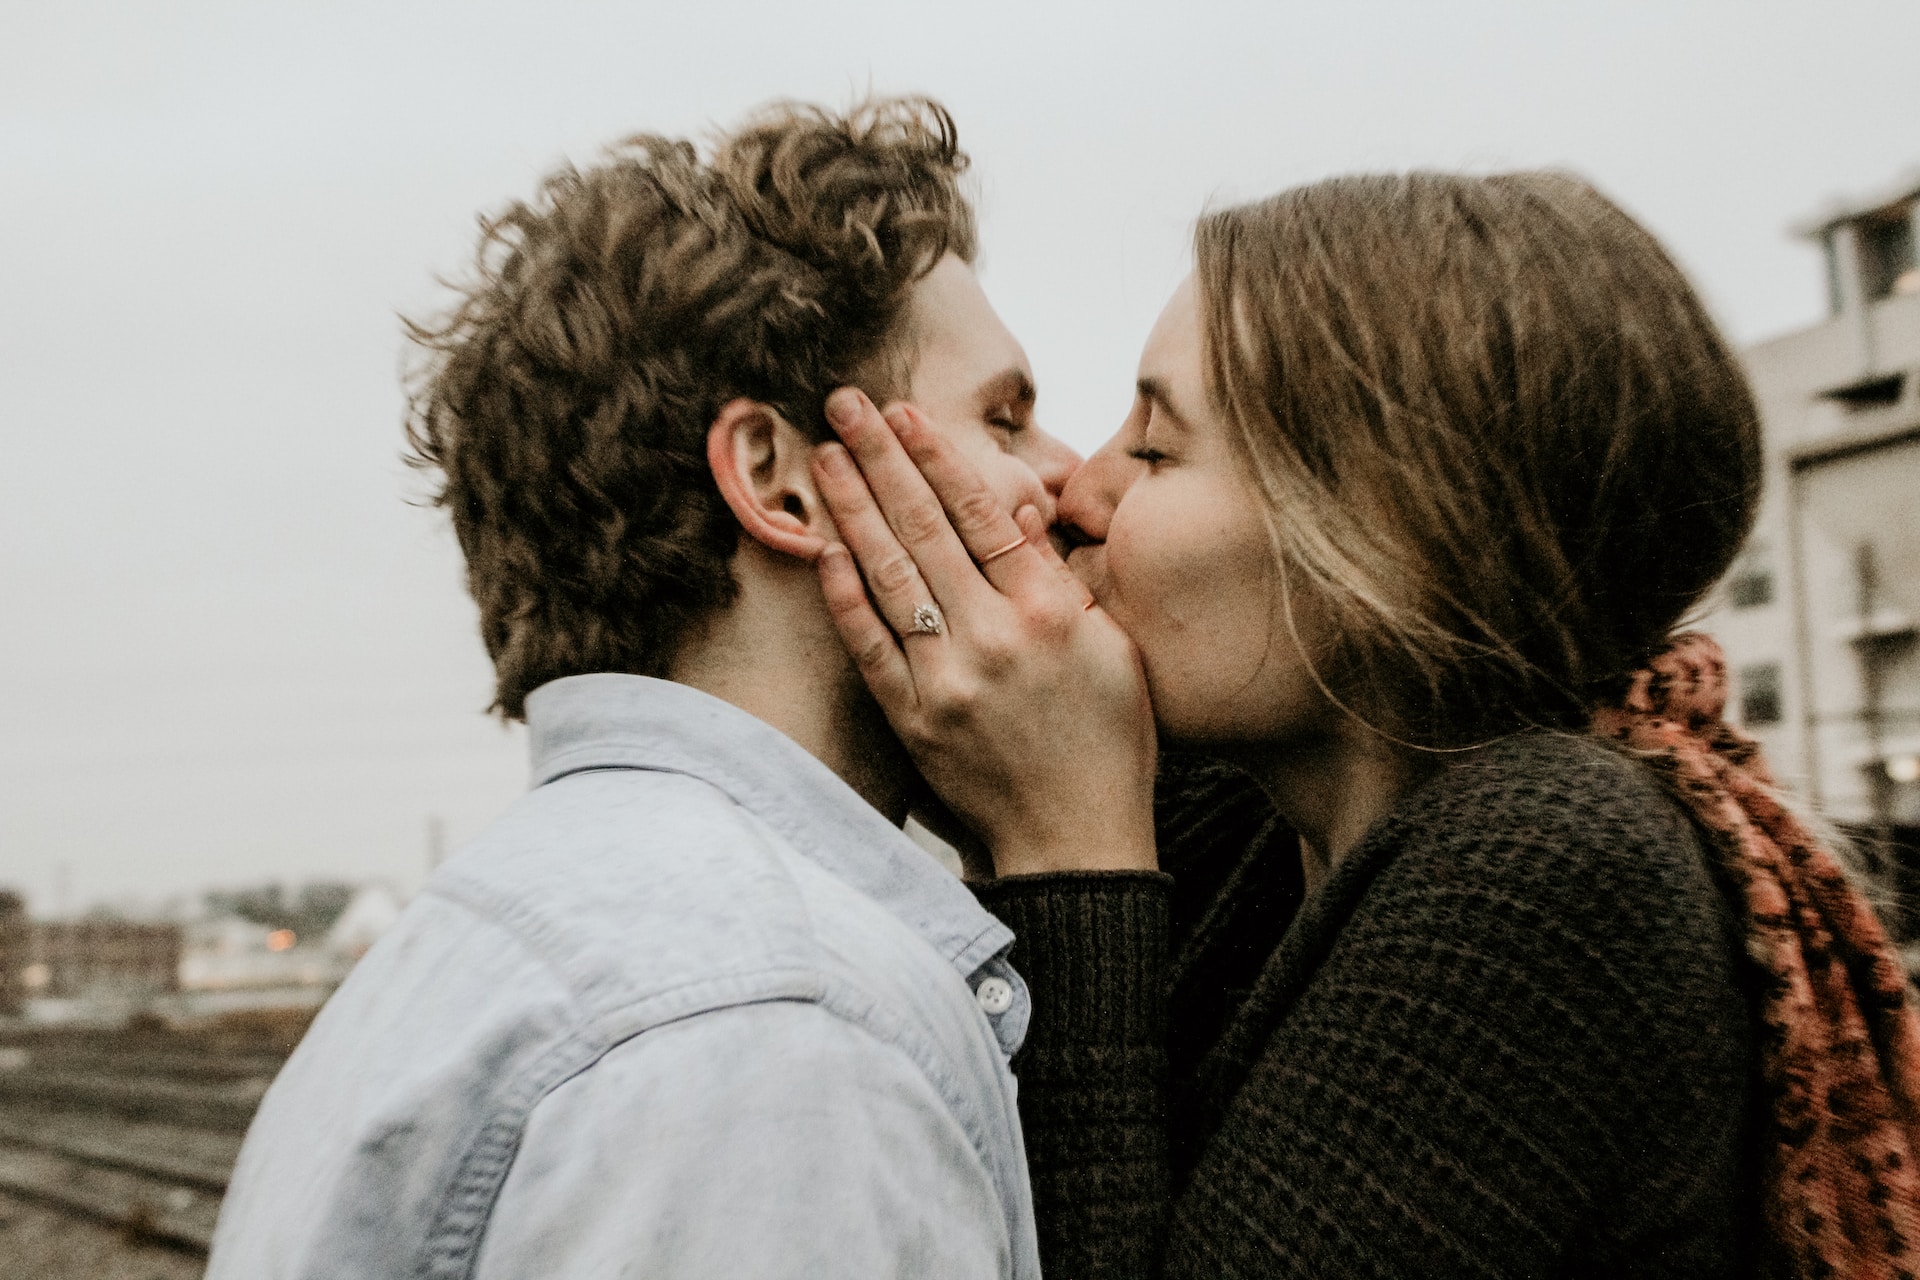 Por qué cerramos los ojos al besar según la ciencia